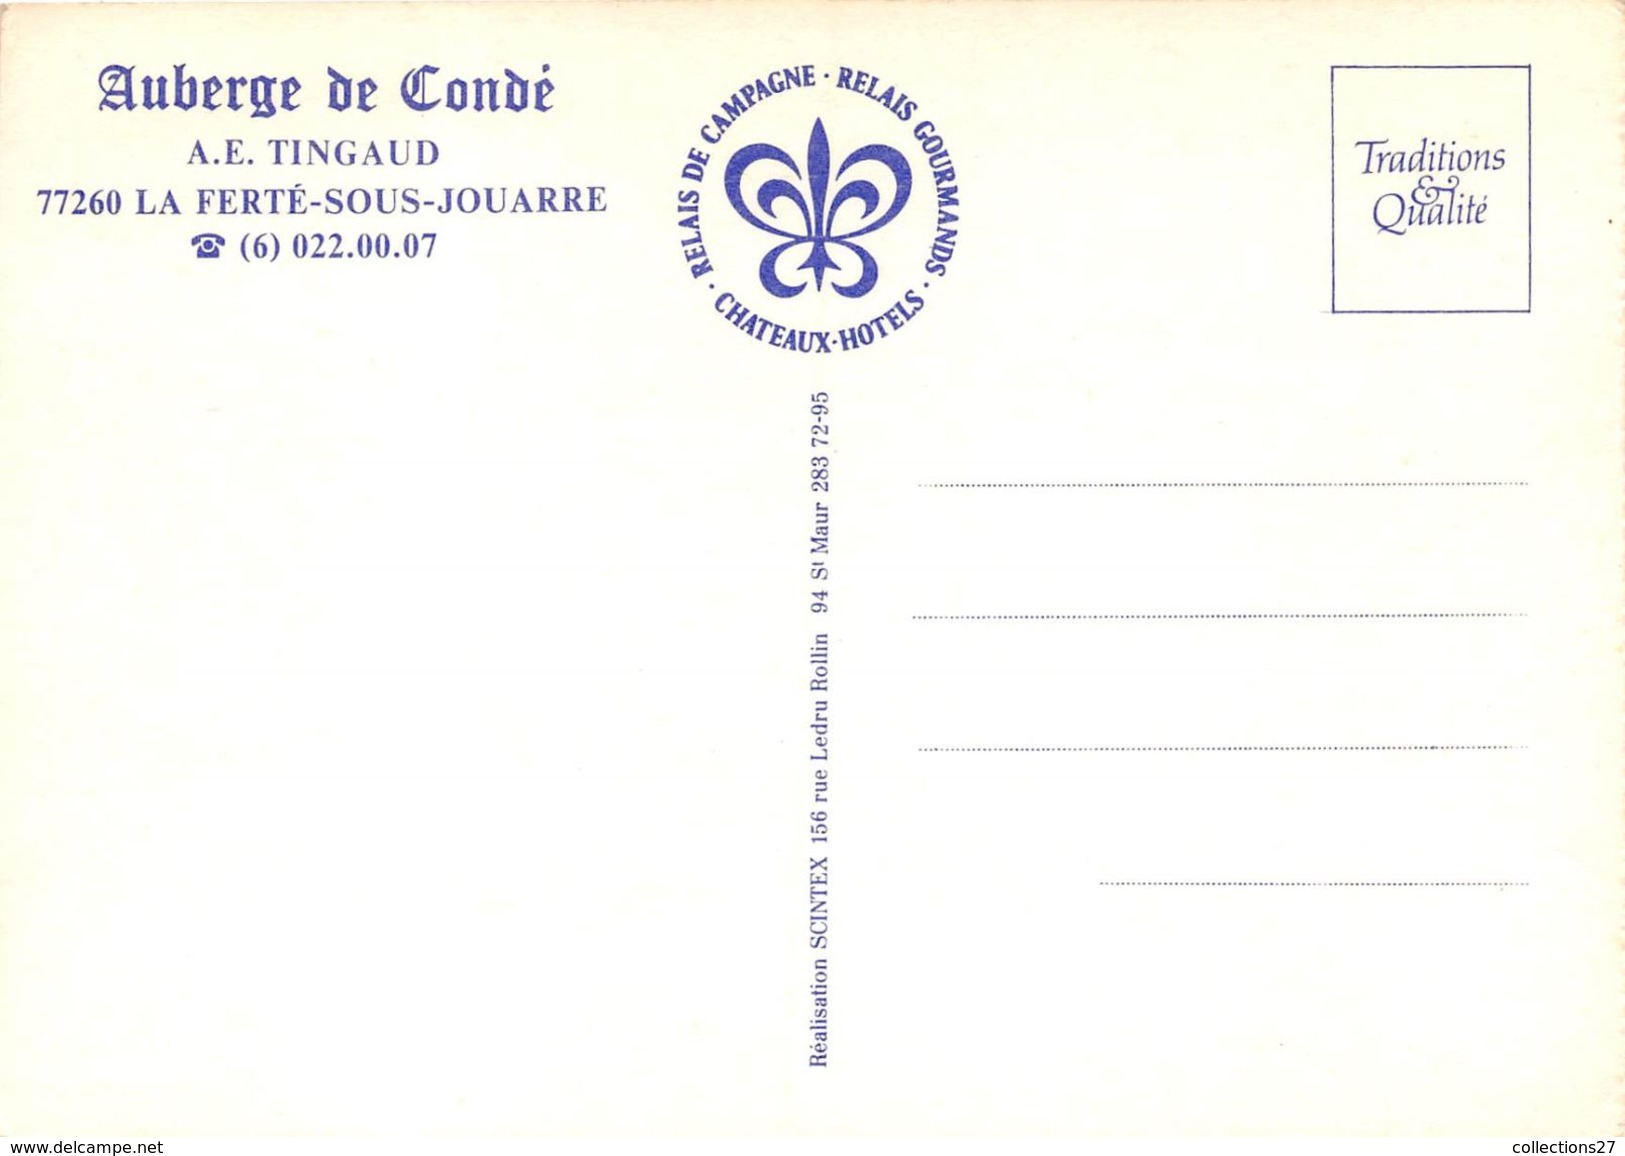 77-LA-FERTE-SOUS-JOUARRE- AUBERGE DE CONDE / A.E. TINGAUD - La Ferte Sous Jouarre